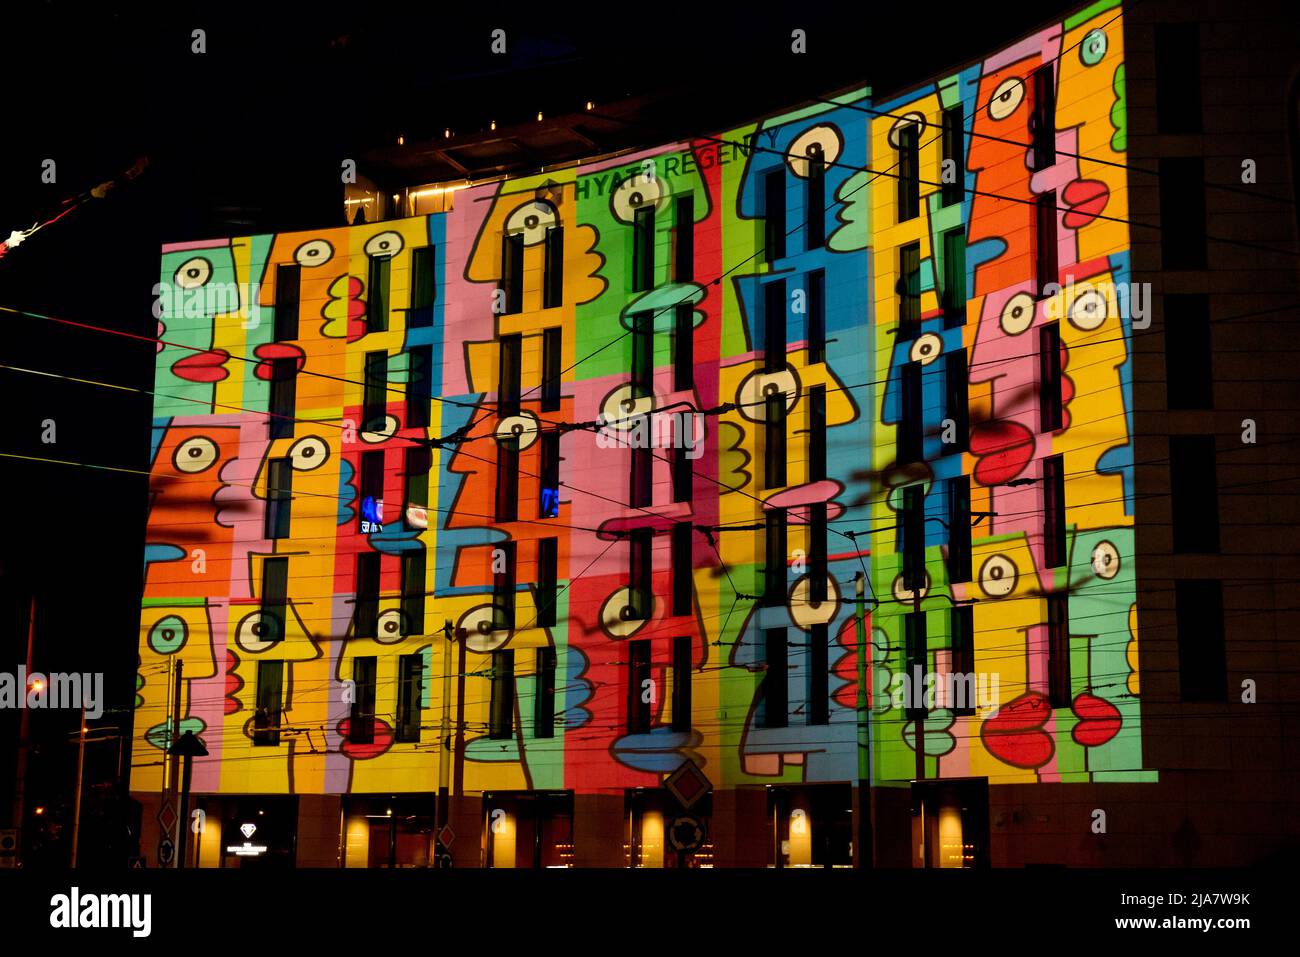 Hyatt Regency Hôtel façade illuminée pendant le Festival lunaire des lumières, Sofia, Bulgarie, Europe de l'est, Balkans, UE Banque D'Images